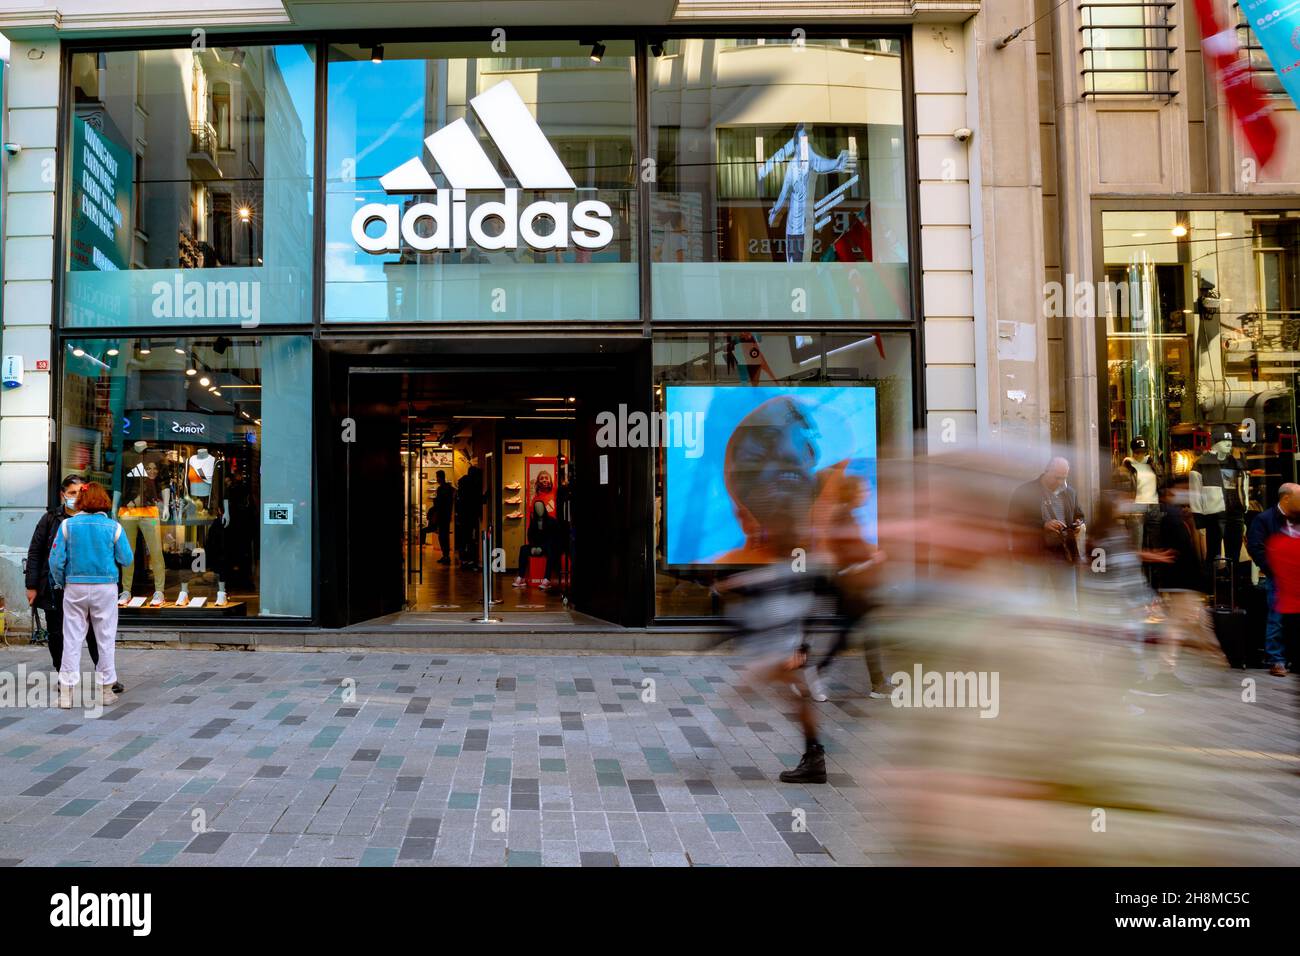 Adidas Store. Adidas Store in Istanbul. Bewegung von Menschen, die zu Fuß  gehen. Taksim Istanbul Türkei - 11.13.2021 Stockfotografie - Alamy